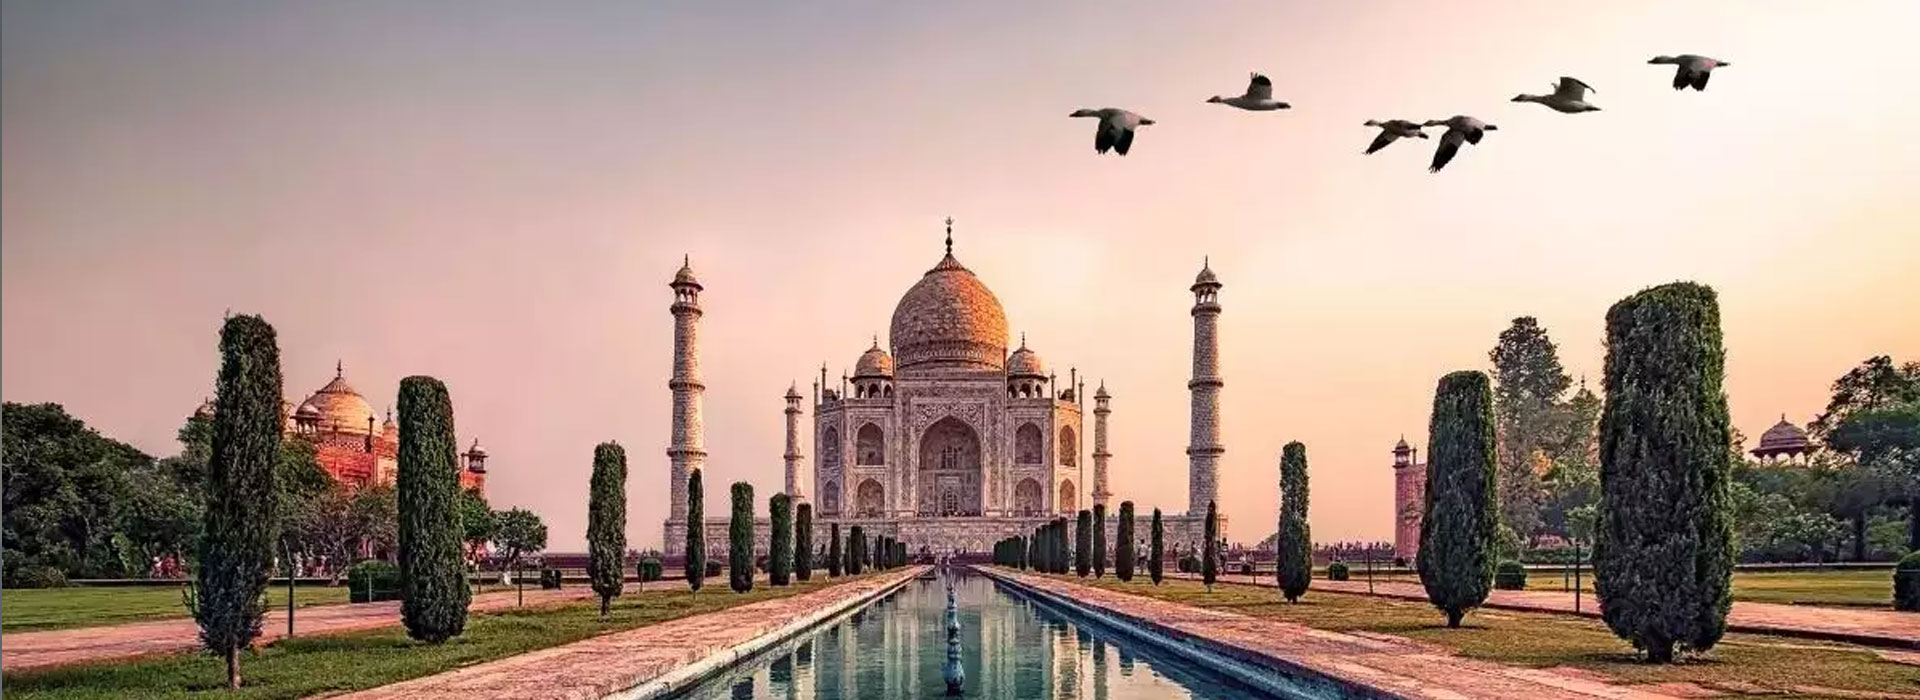 Day trip to Taj Mahal business-class